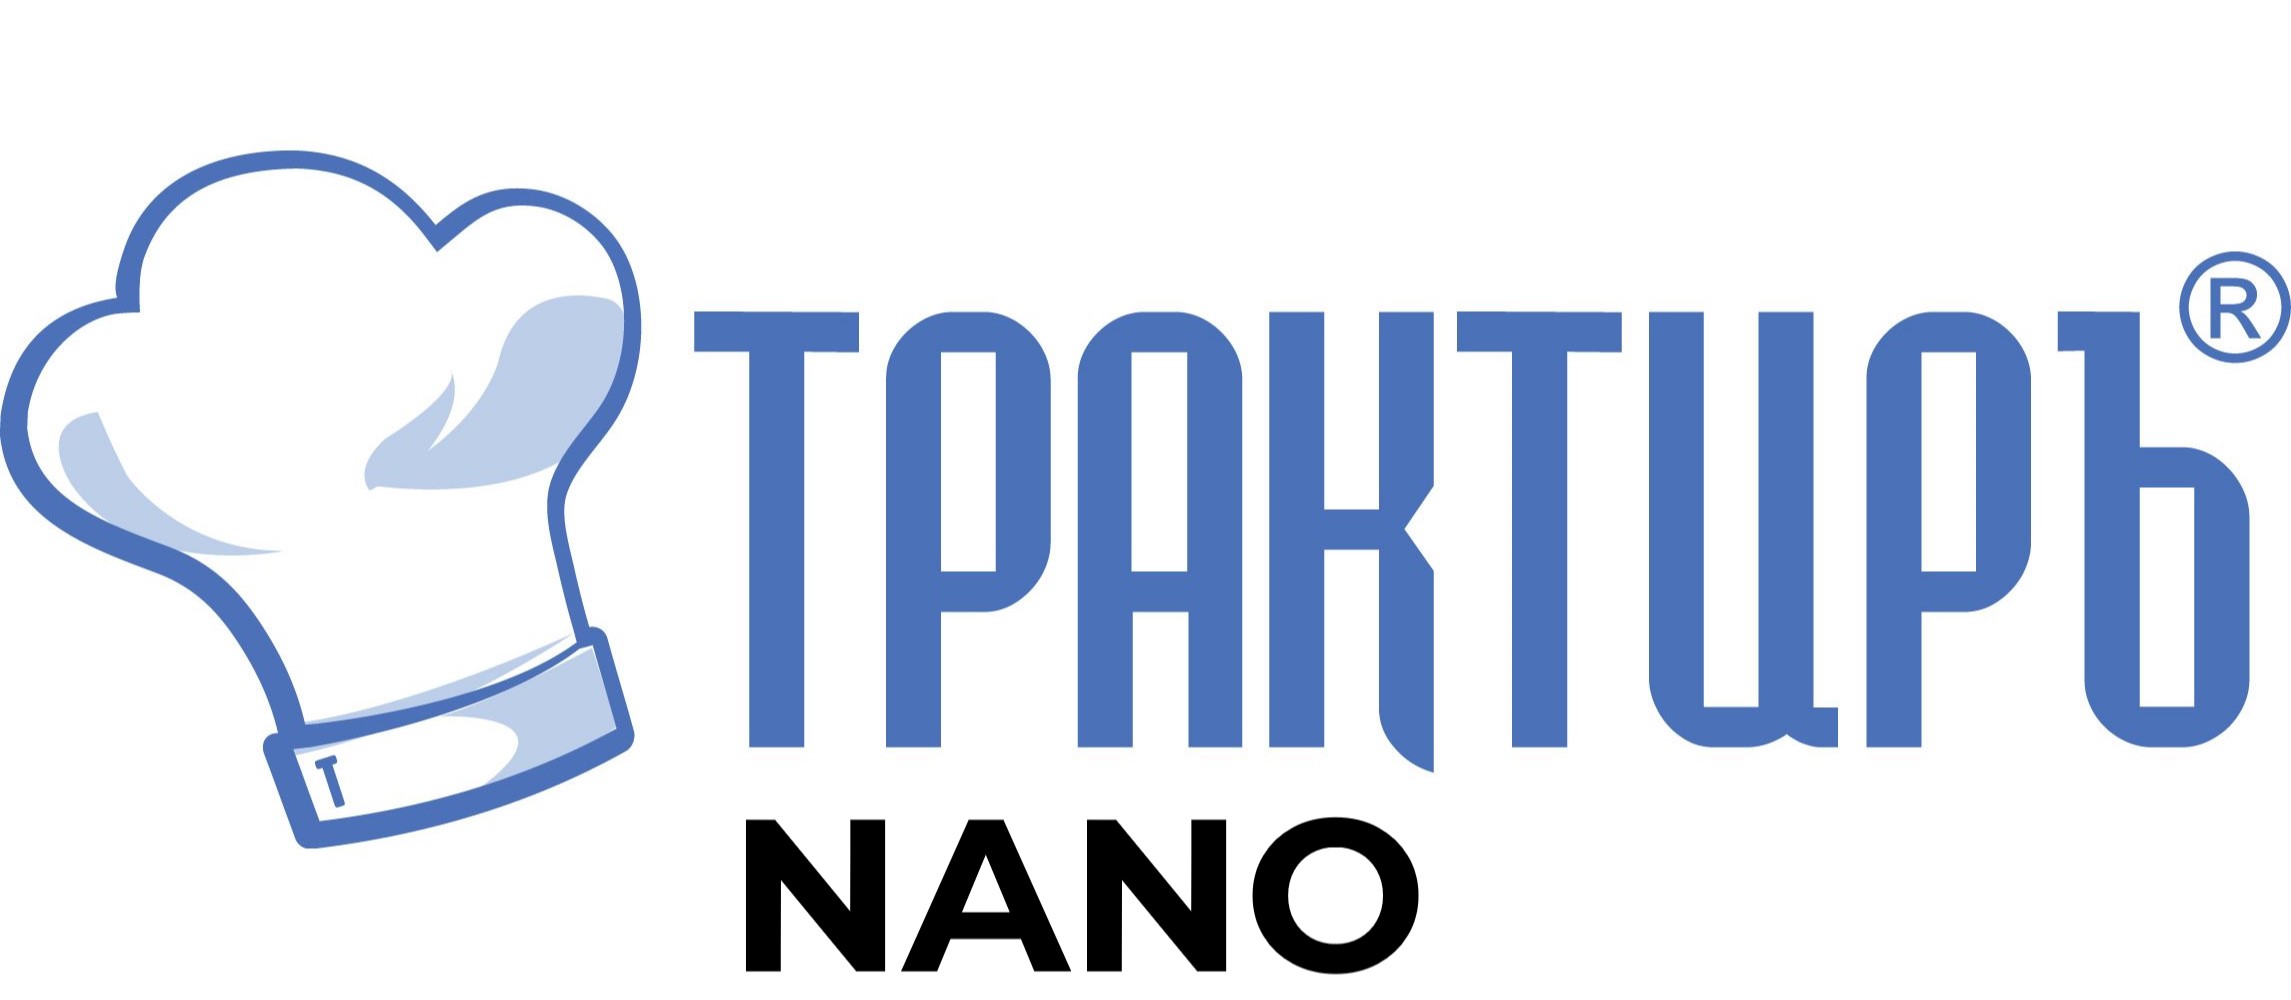 Конфигурация Трактиръ: Nano (Основная поставка) в Ярославле